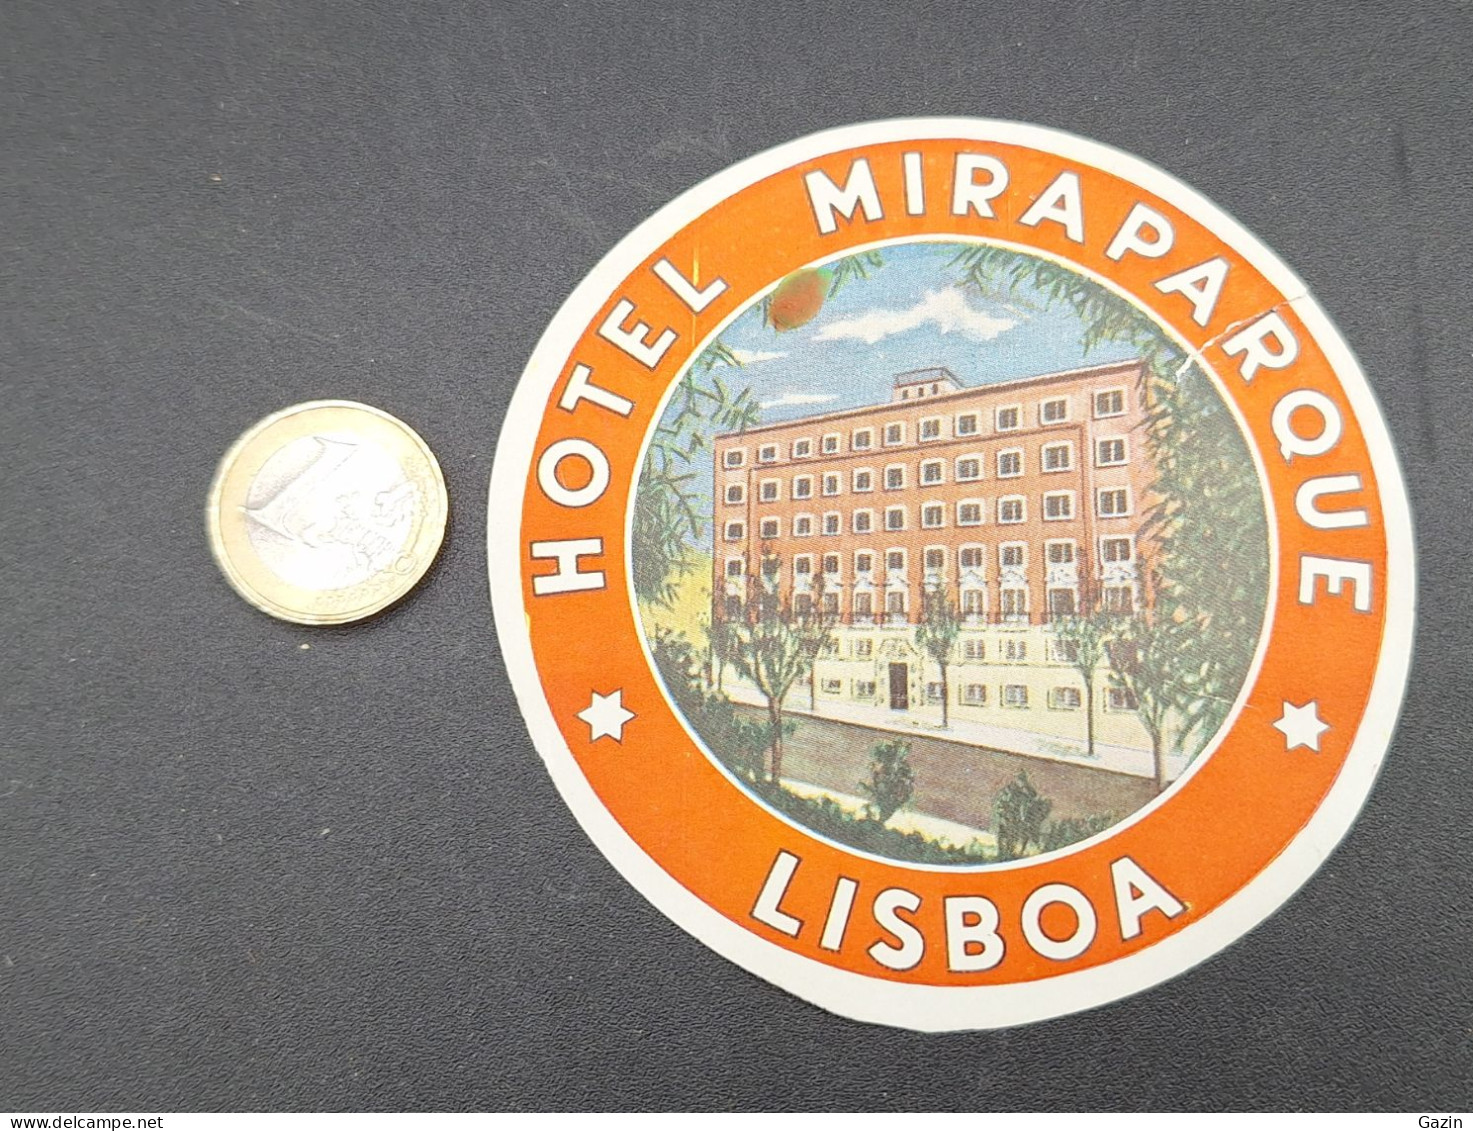 C7/3 - Hotel Mira Parque * Lisboa * Portugal *  Luggage Lable * Rótulo * Etiqueta - Adesivi Di Alberghi